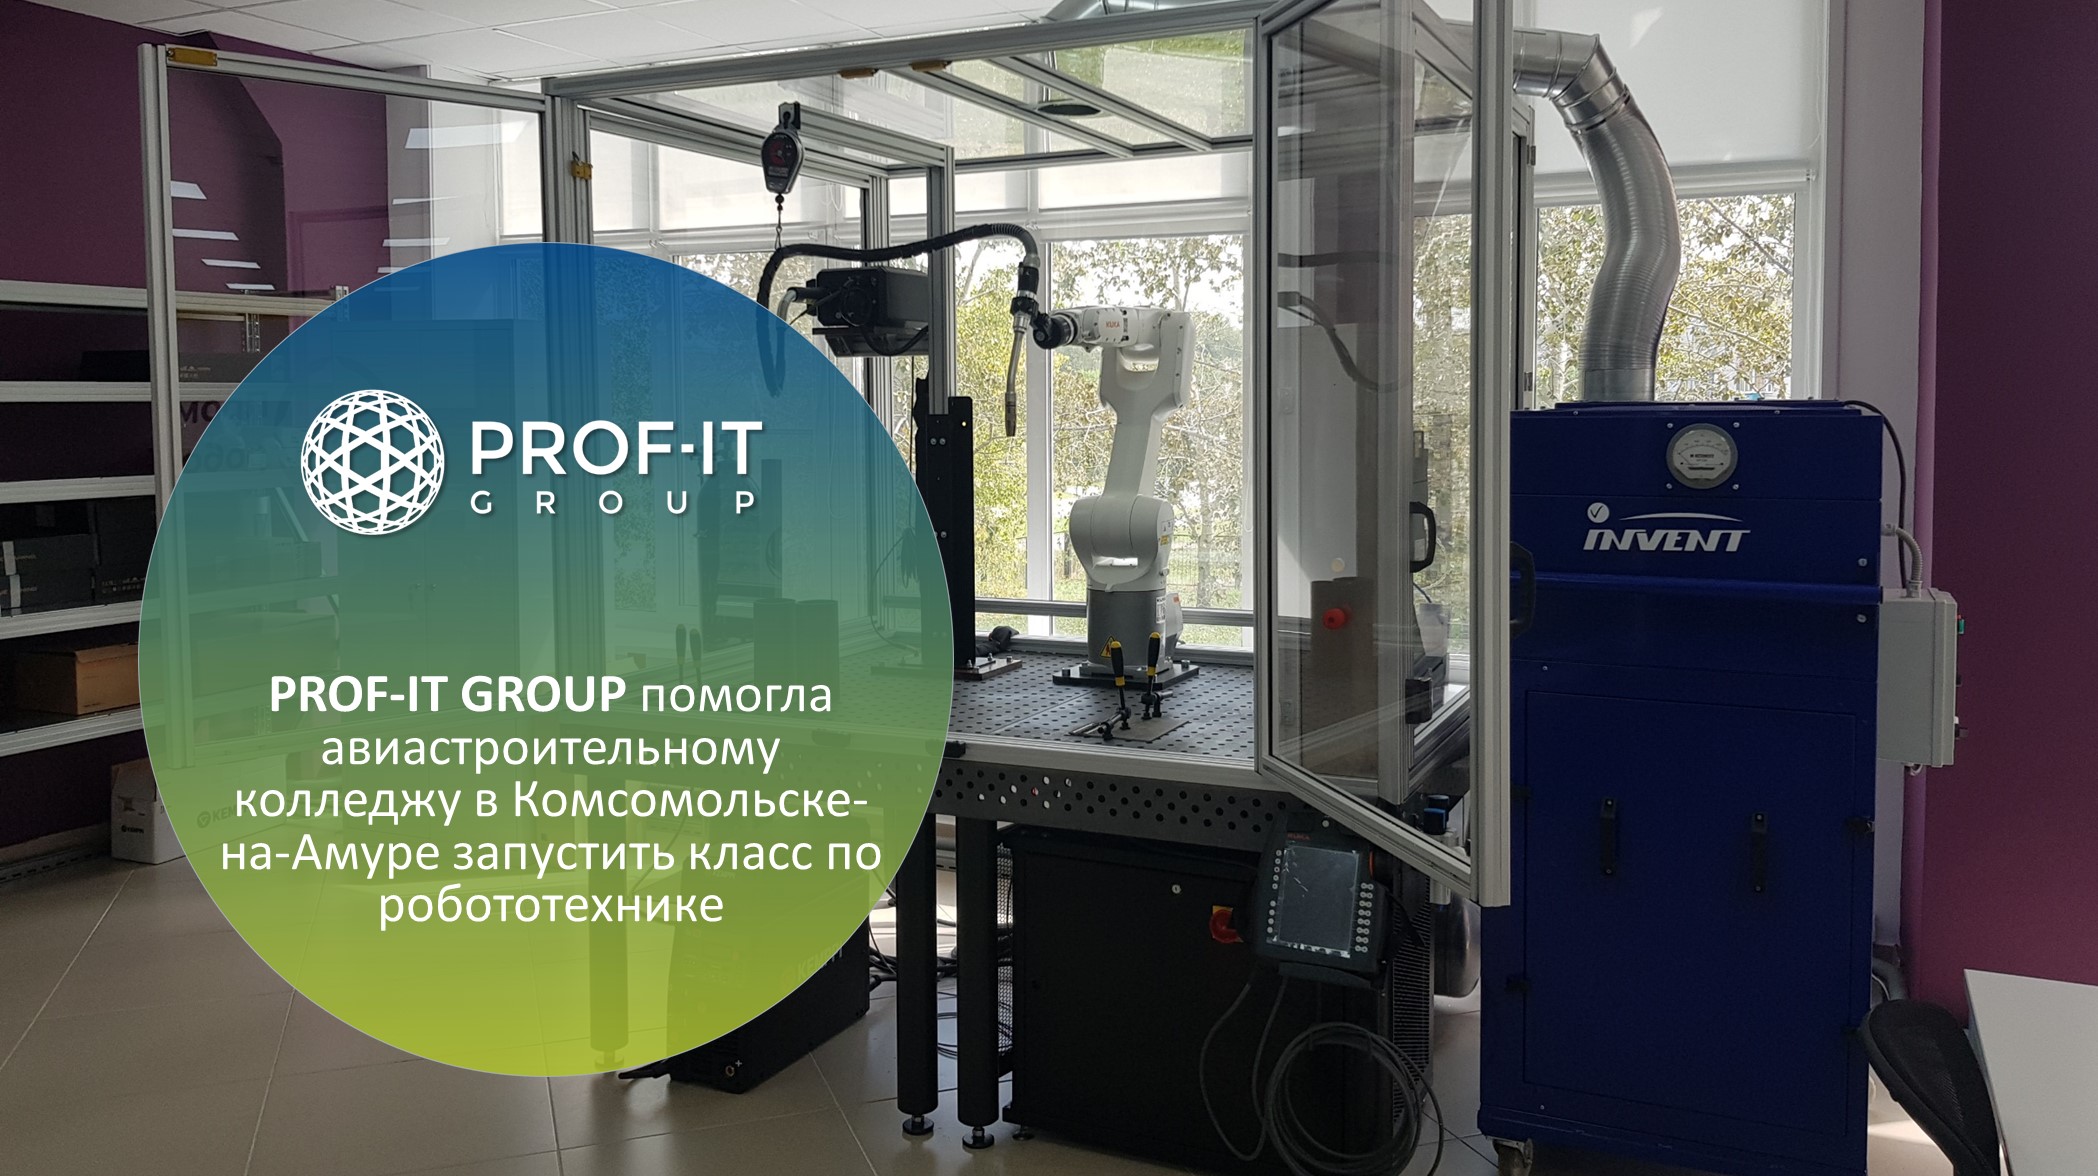 PROF-IT GROUP помогла Губернаторскому авиастроительному колледжу в Комсомольске-на-Амуре запустить учебный класс по робототехнике